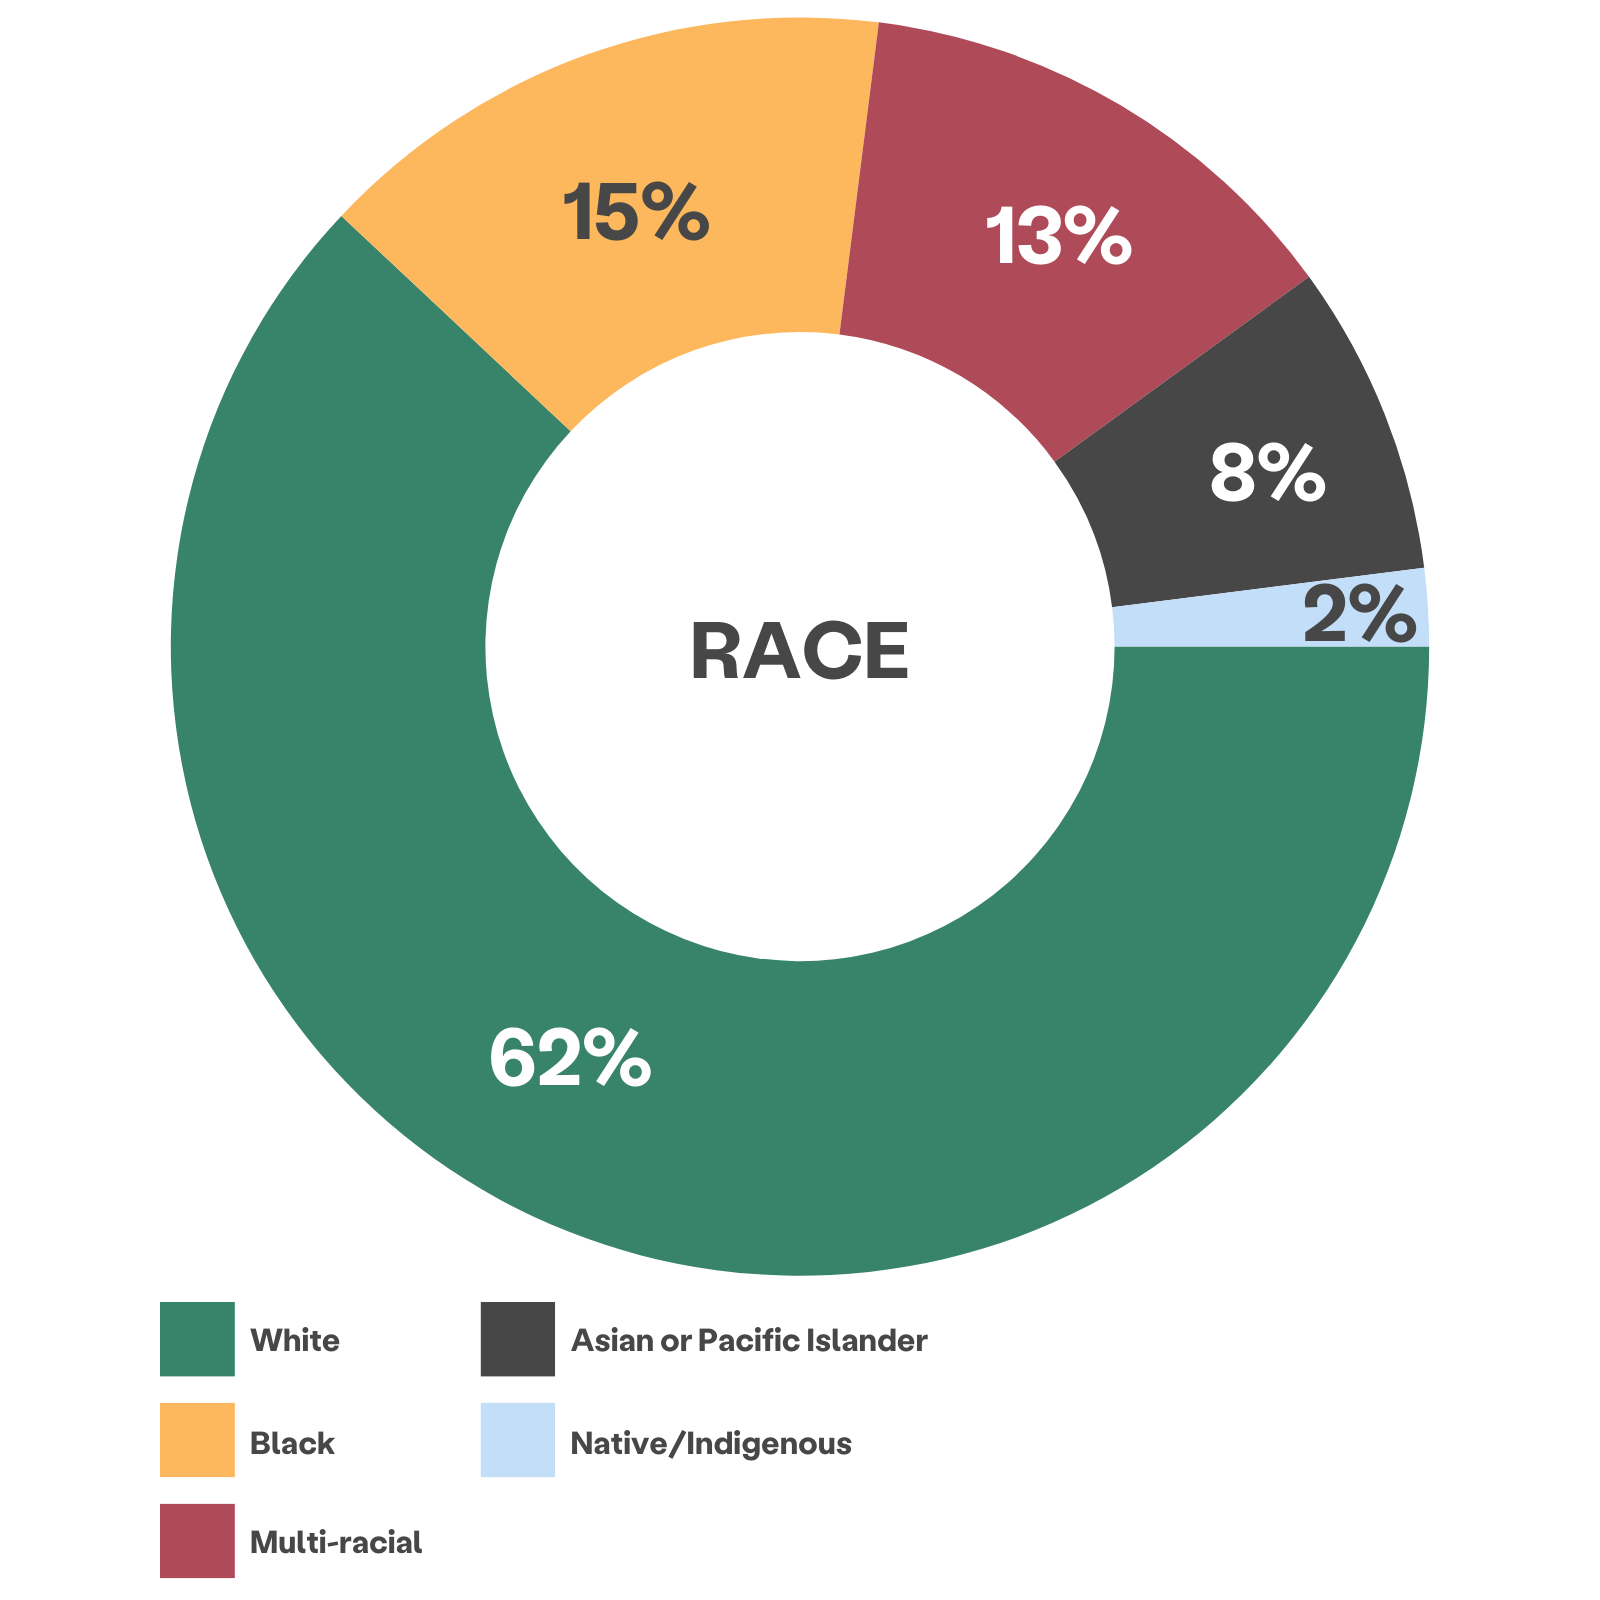 mehrfarbiges Raddiagramm mit Angabe der Rasse des Kunden: 62% weiß, 15% schwarz, 13% gemischtrassig, 8% asiatisch oder pazifischer Insulaner, 2% Ureinwohner/Indigener